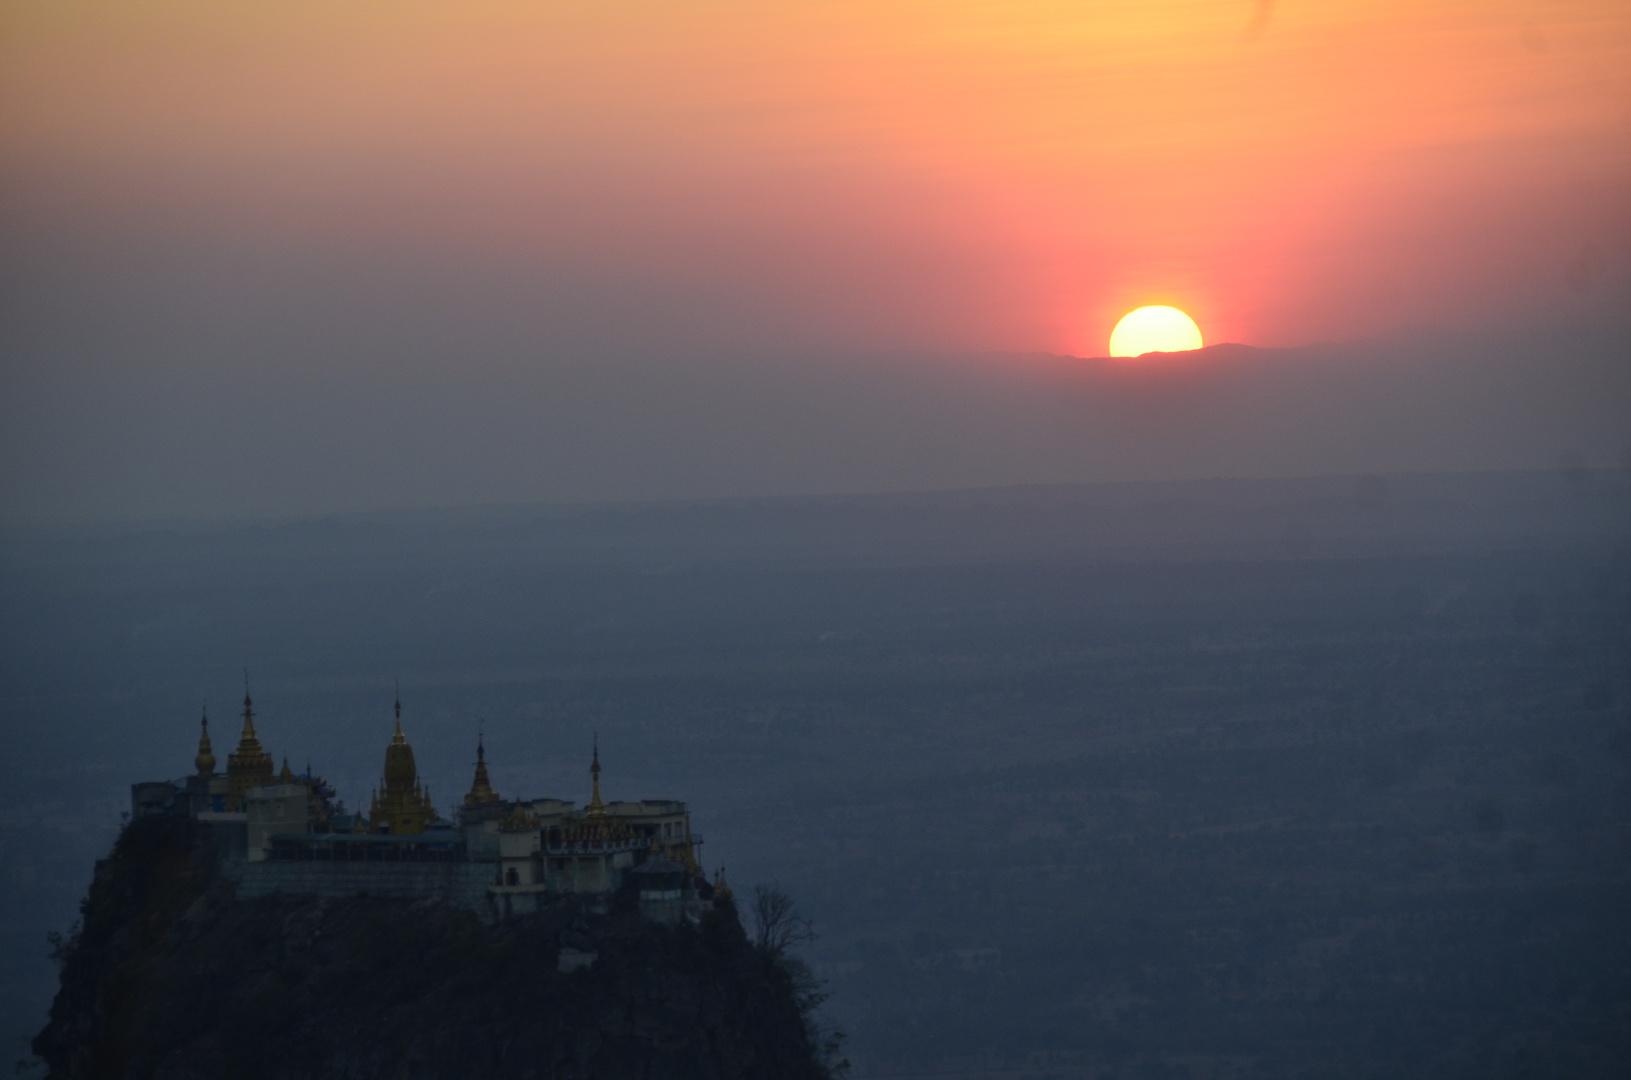 Sonnenuntergang vom Mount Popa aus gesehen